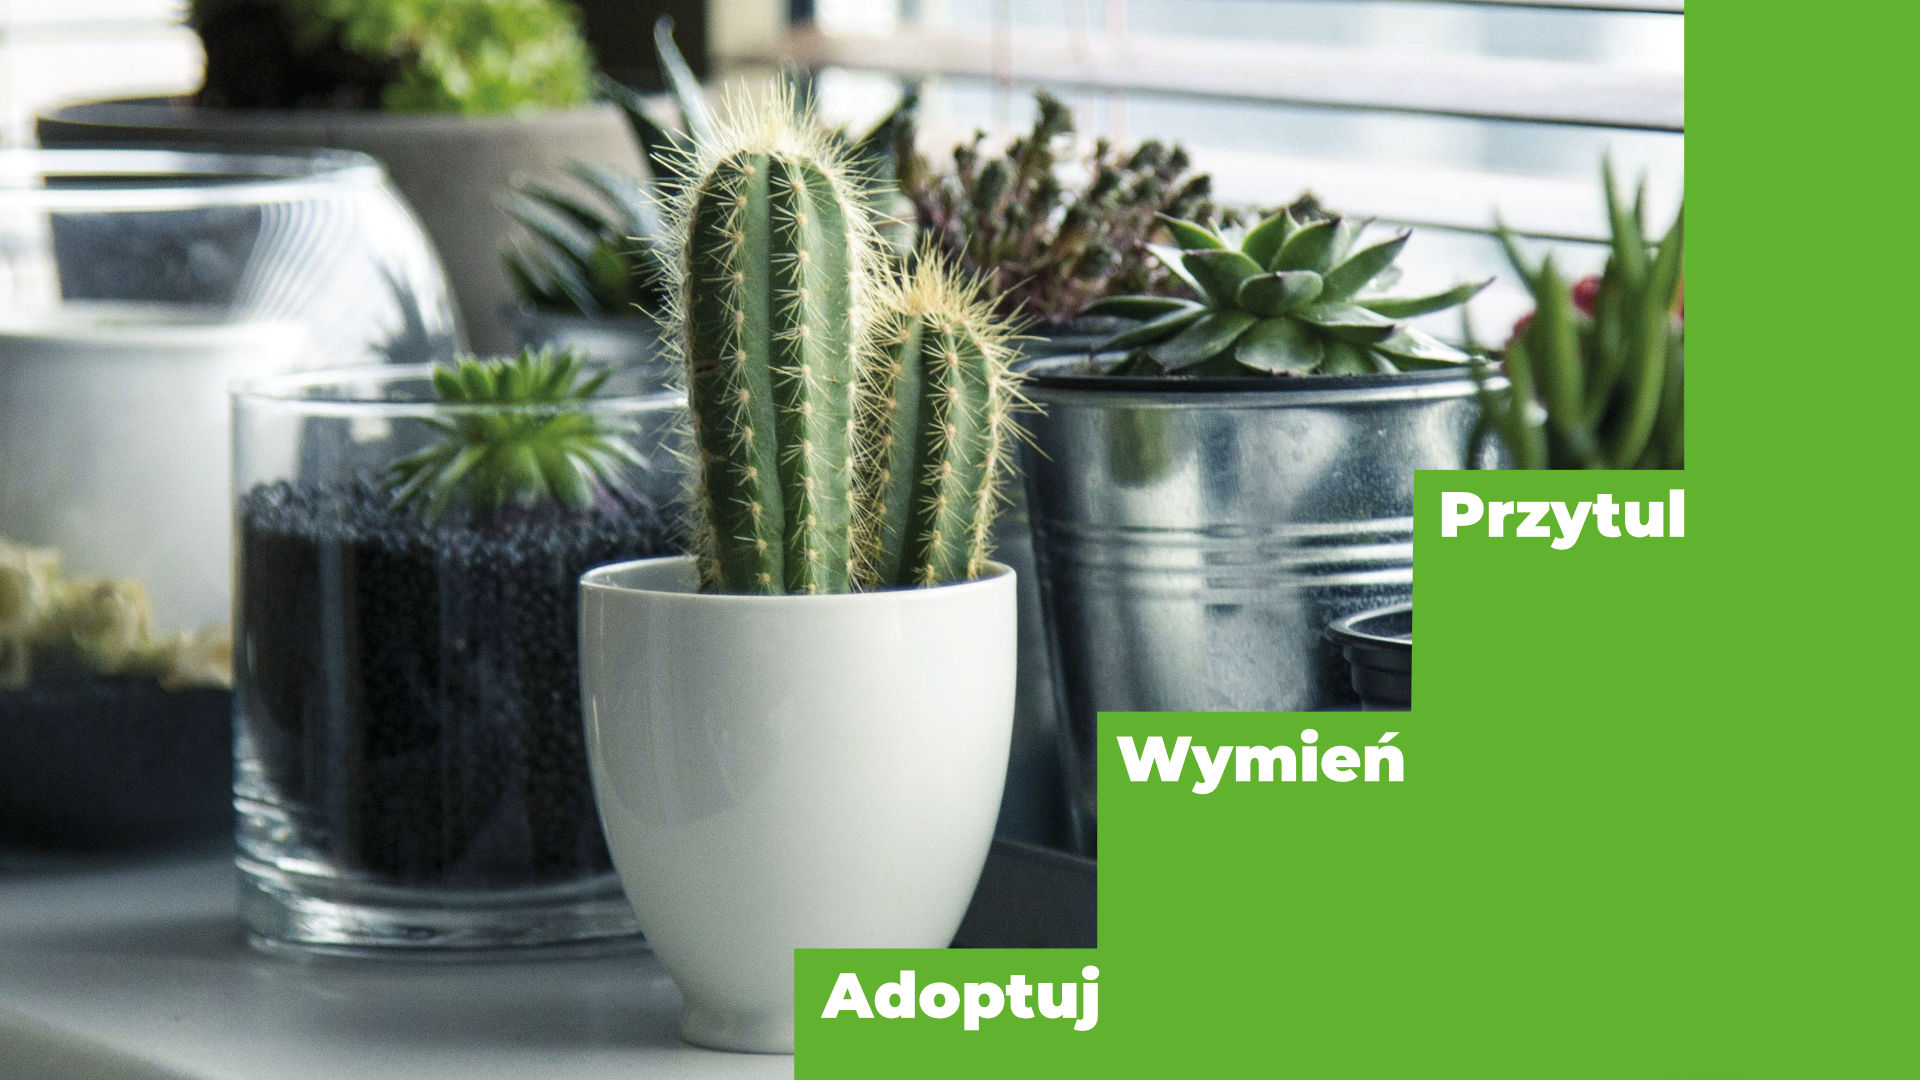 Grafika przedstawiająca kaktusy w doniczkach i hasła: Adoptuj, Wymień, Przytul